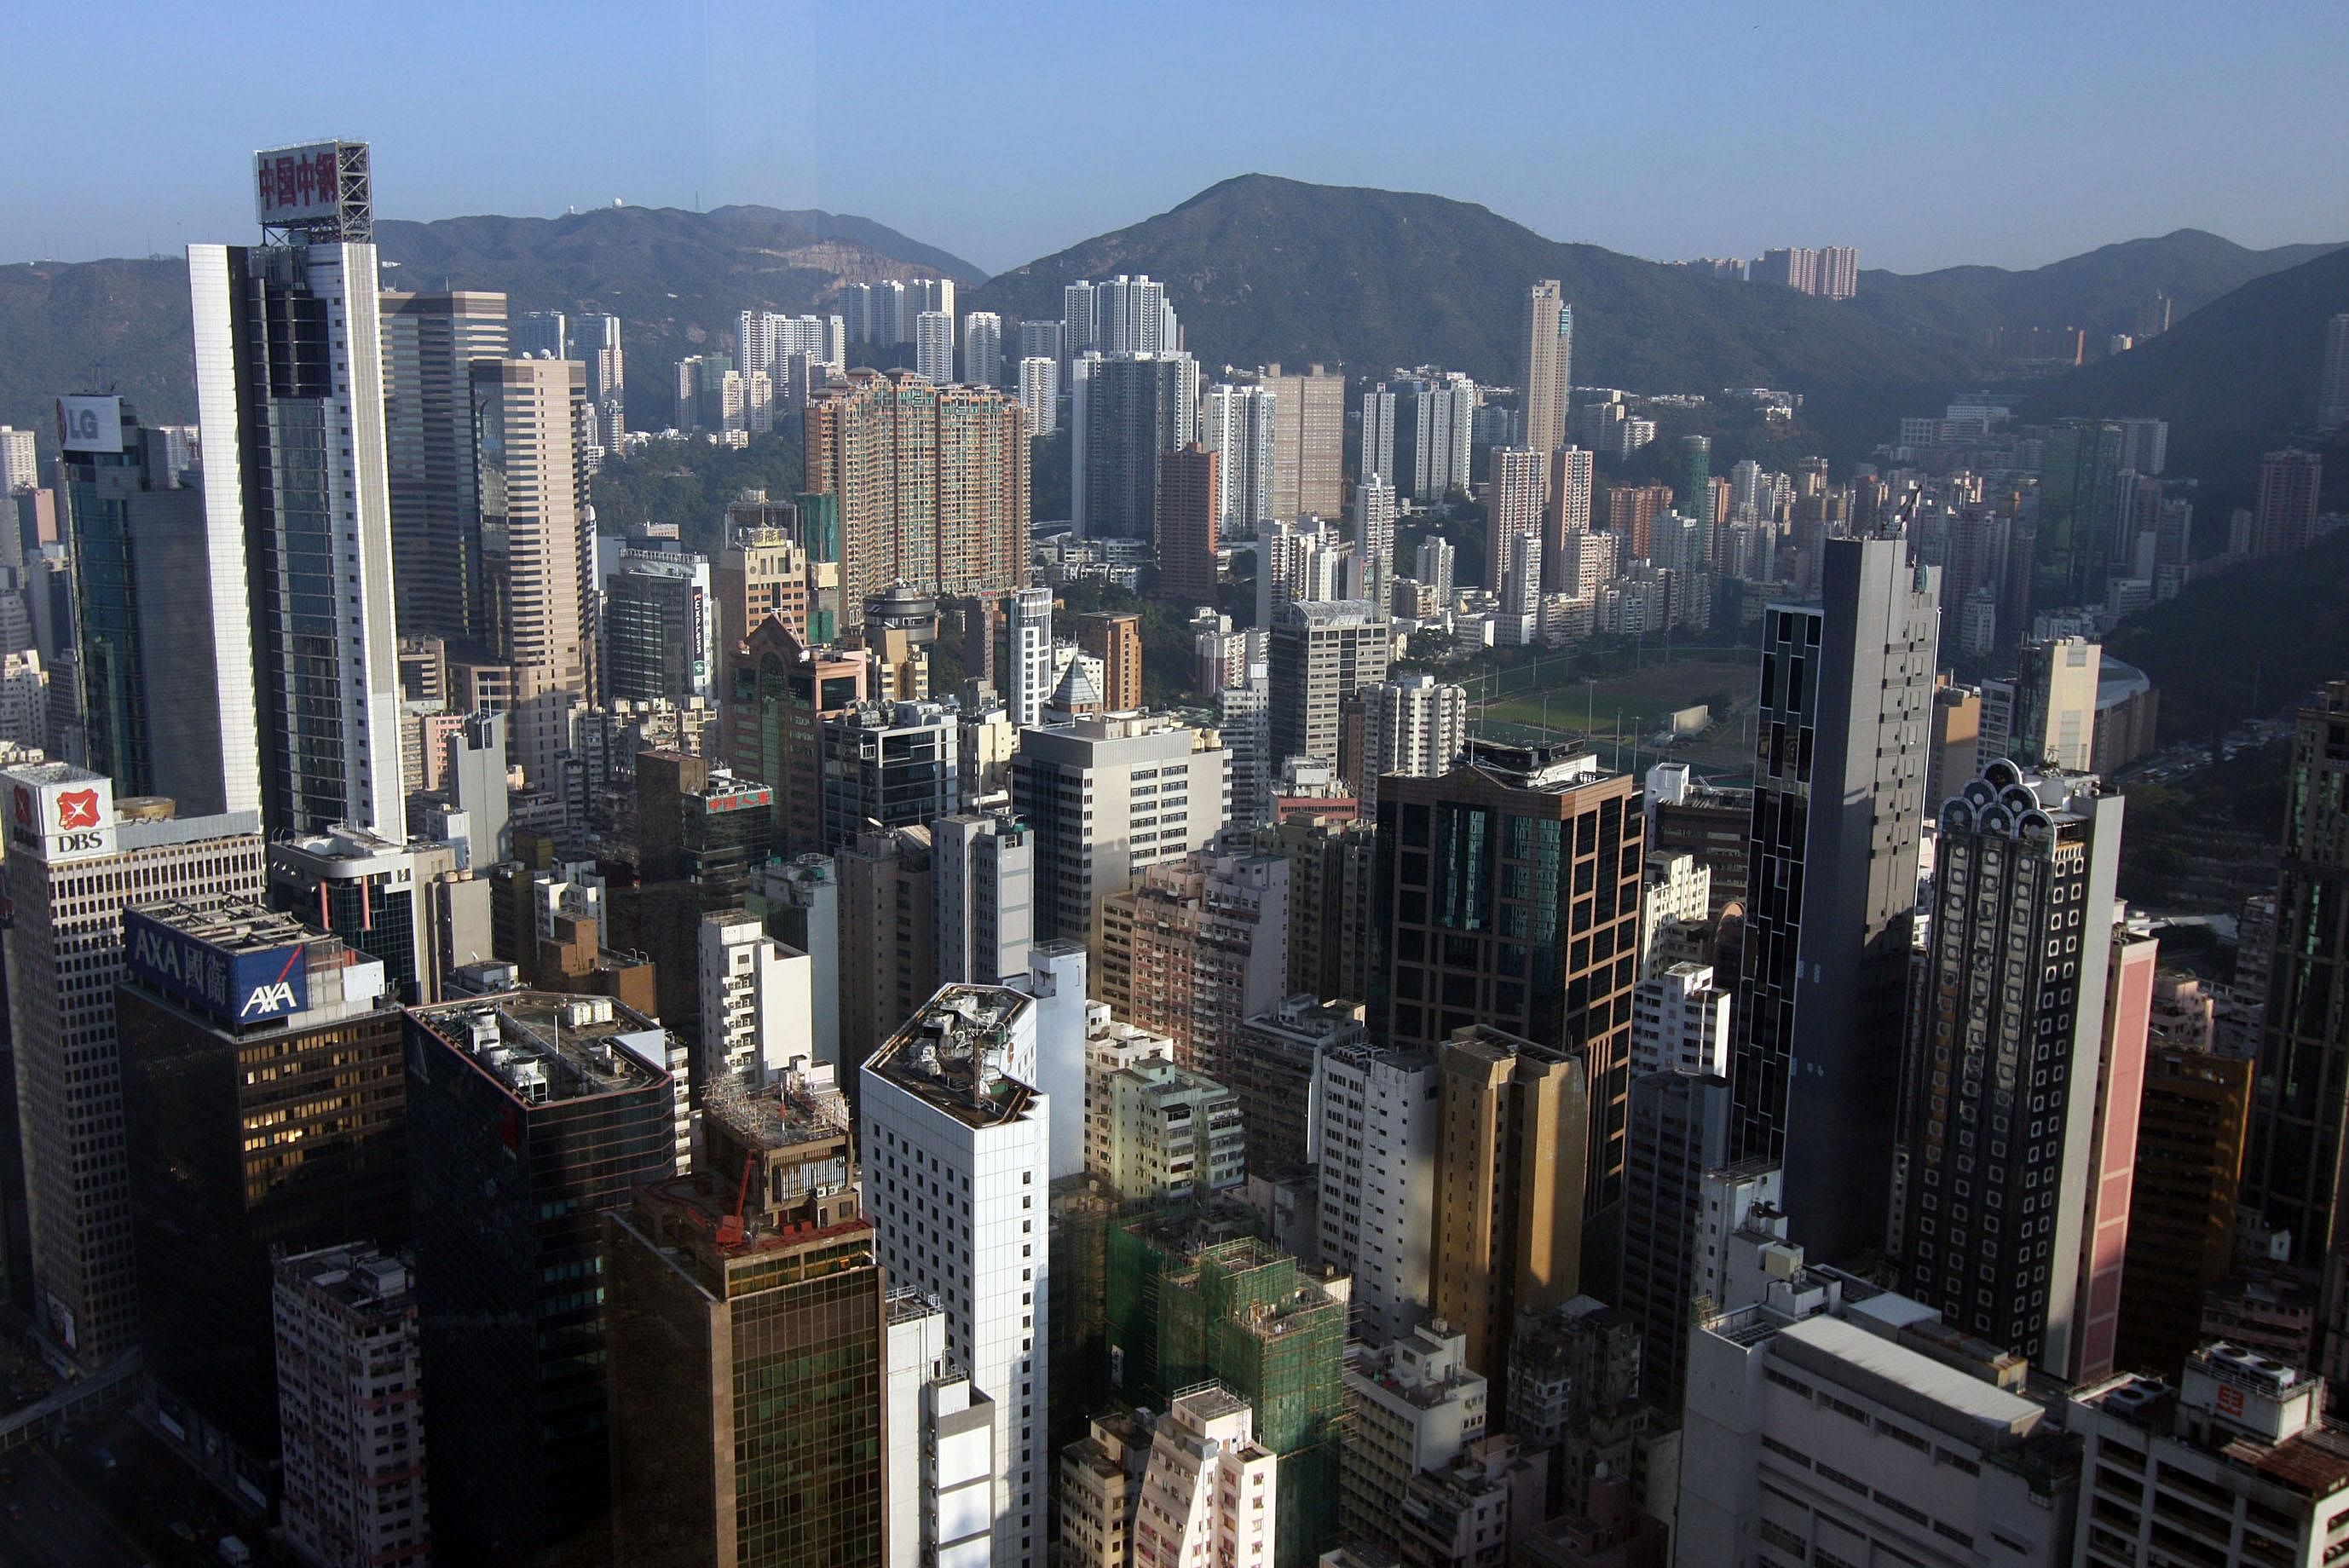 As China's economy slows, Hong Kong aims to rebuild its international image